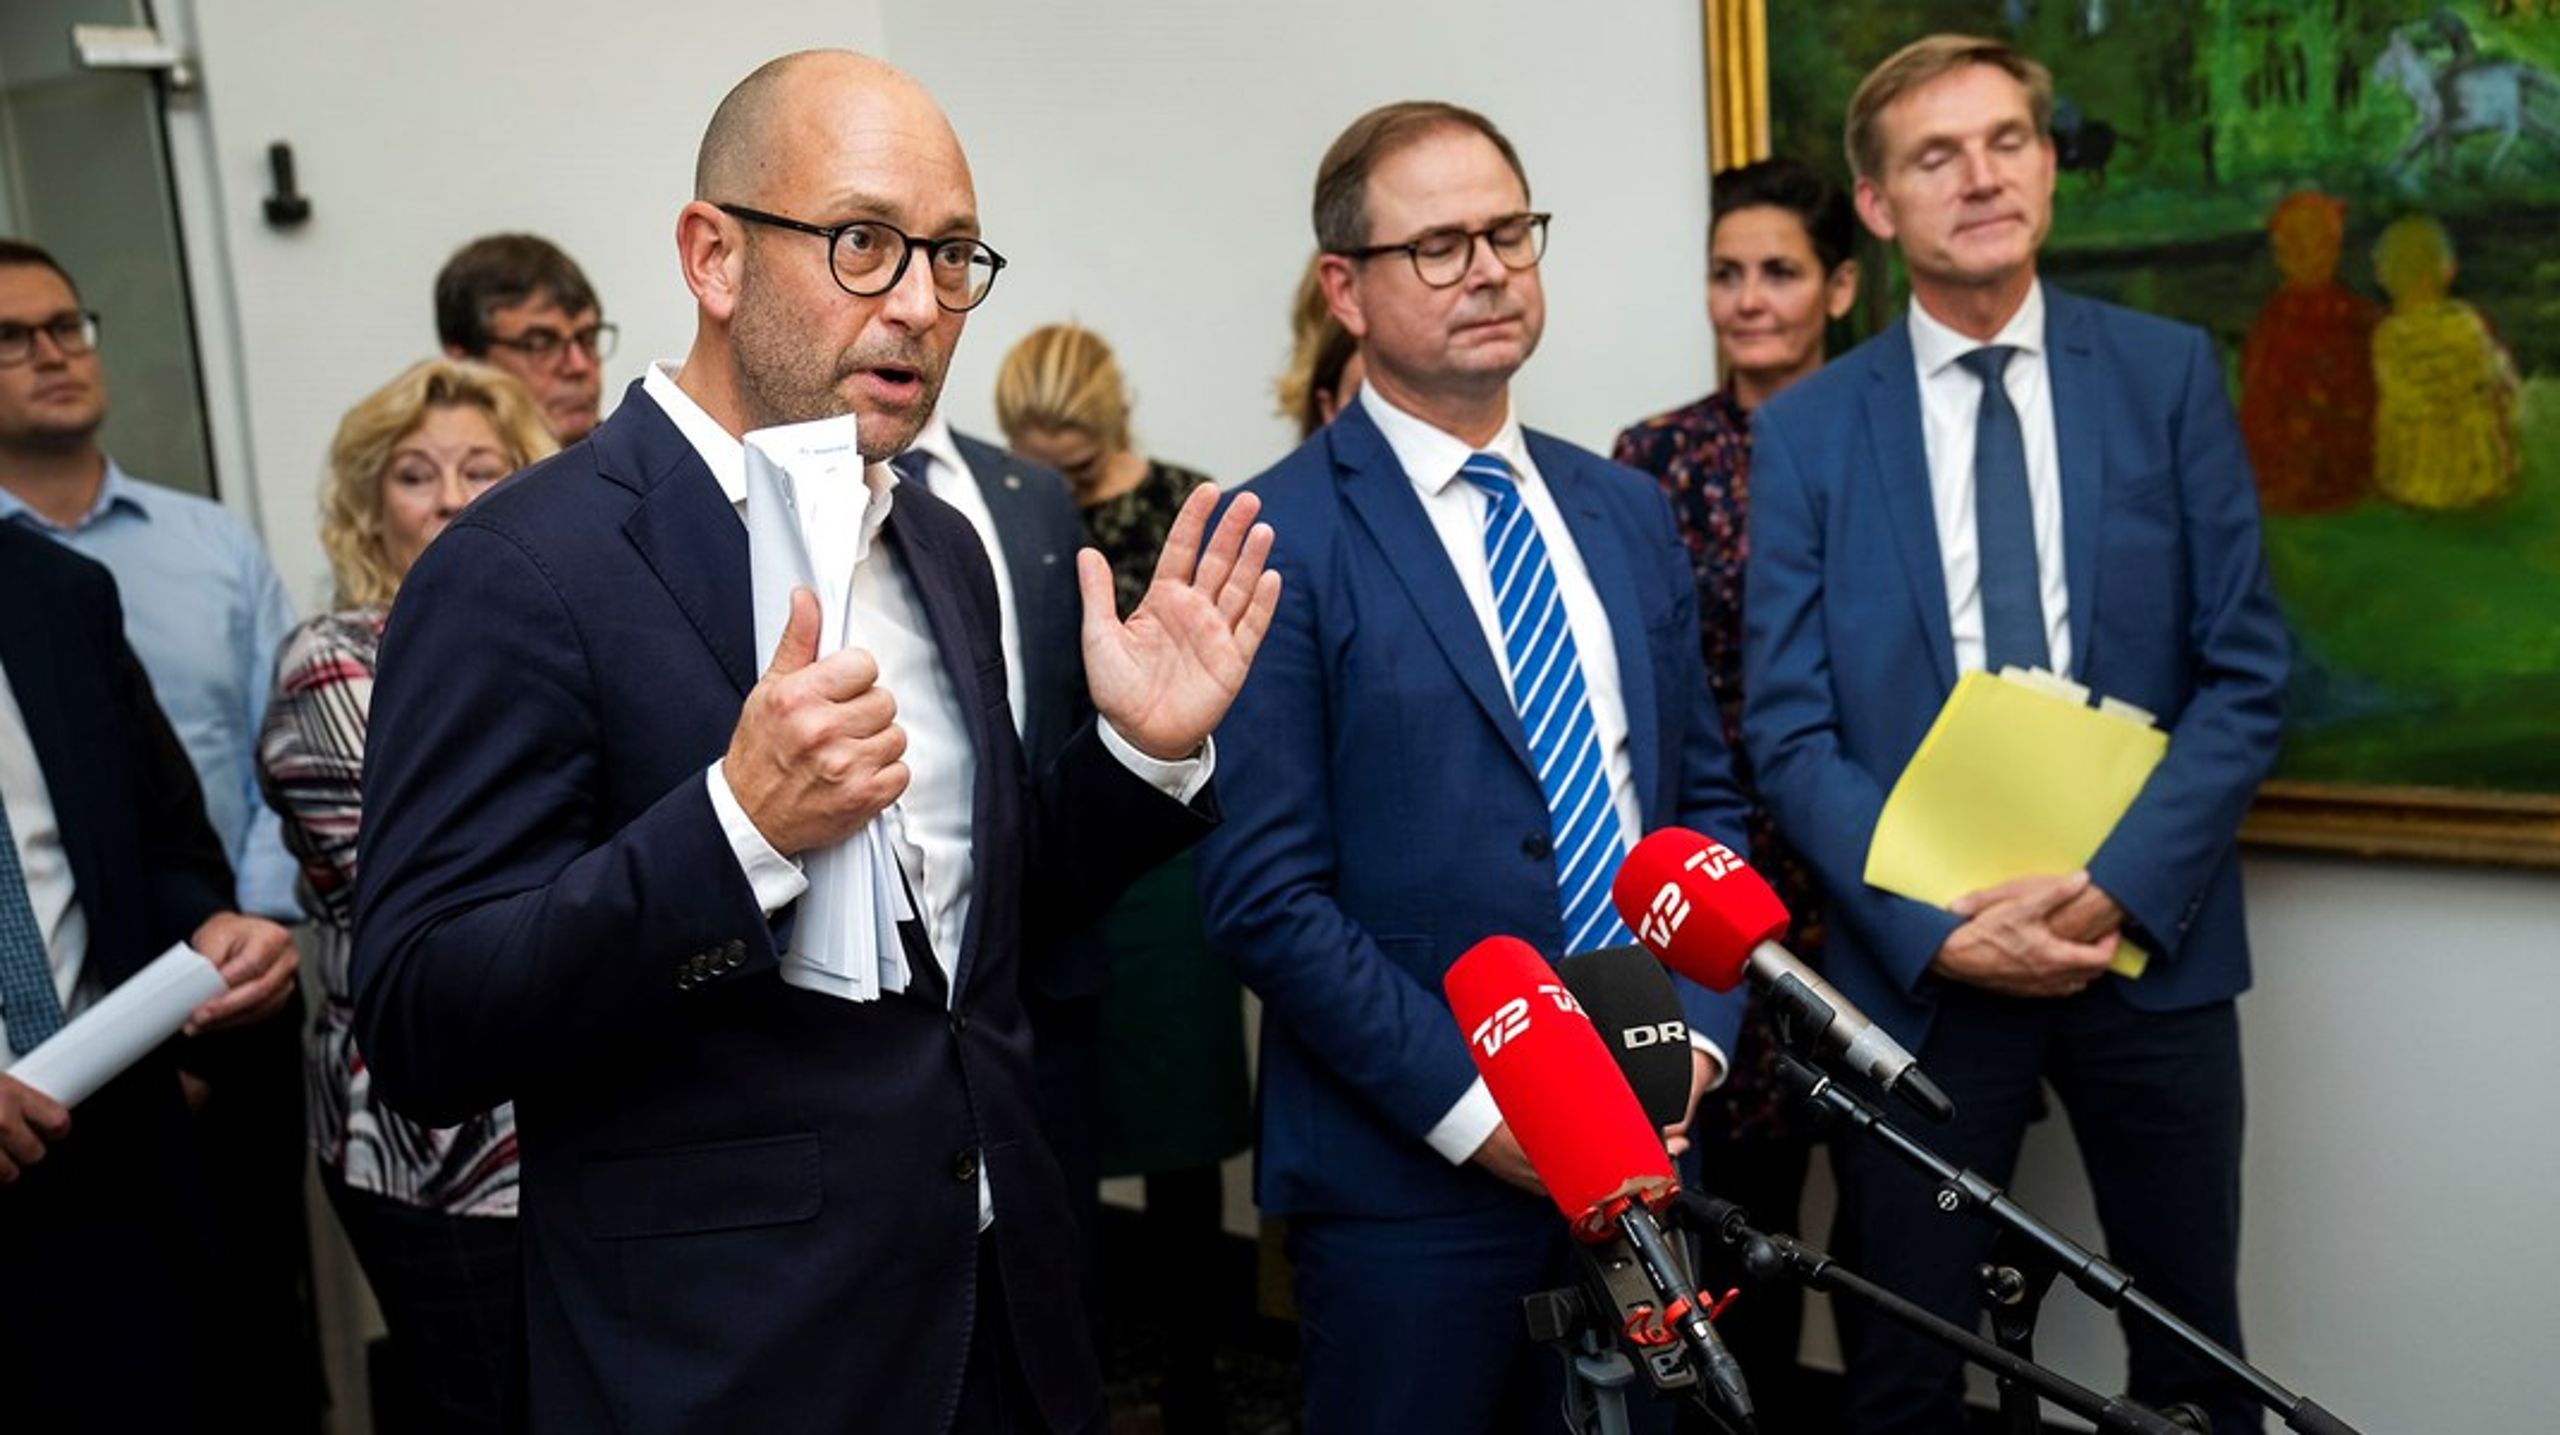 Fødevareminister Rasmus Prehn (S) var glad mandag, da et bredt flertal landede en aftale for landbruget.&nbsp;